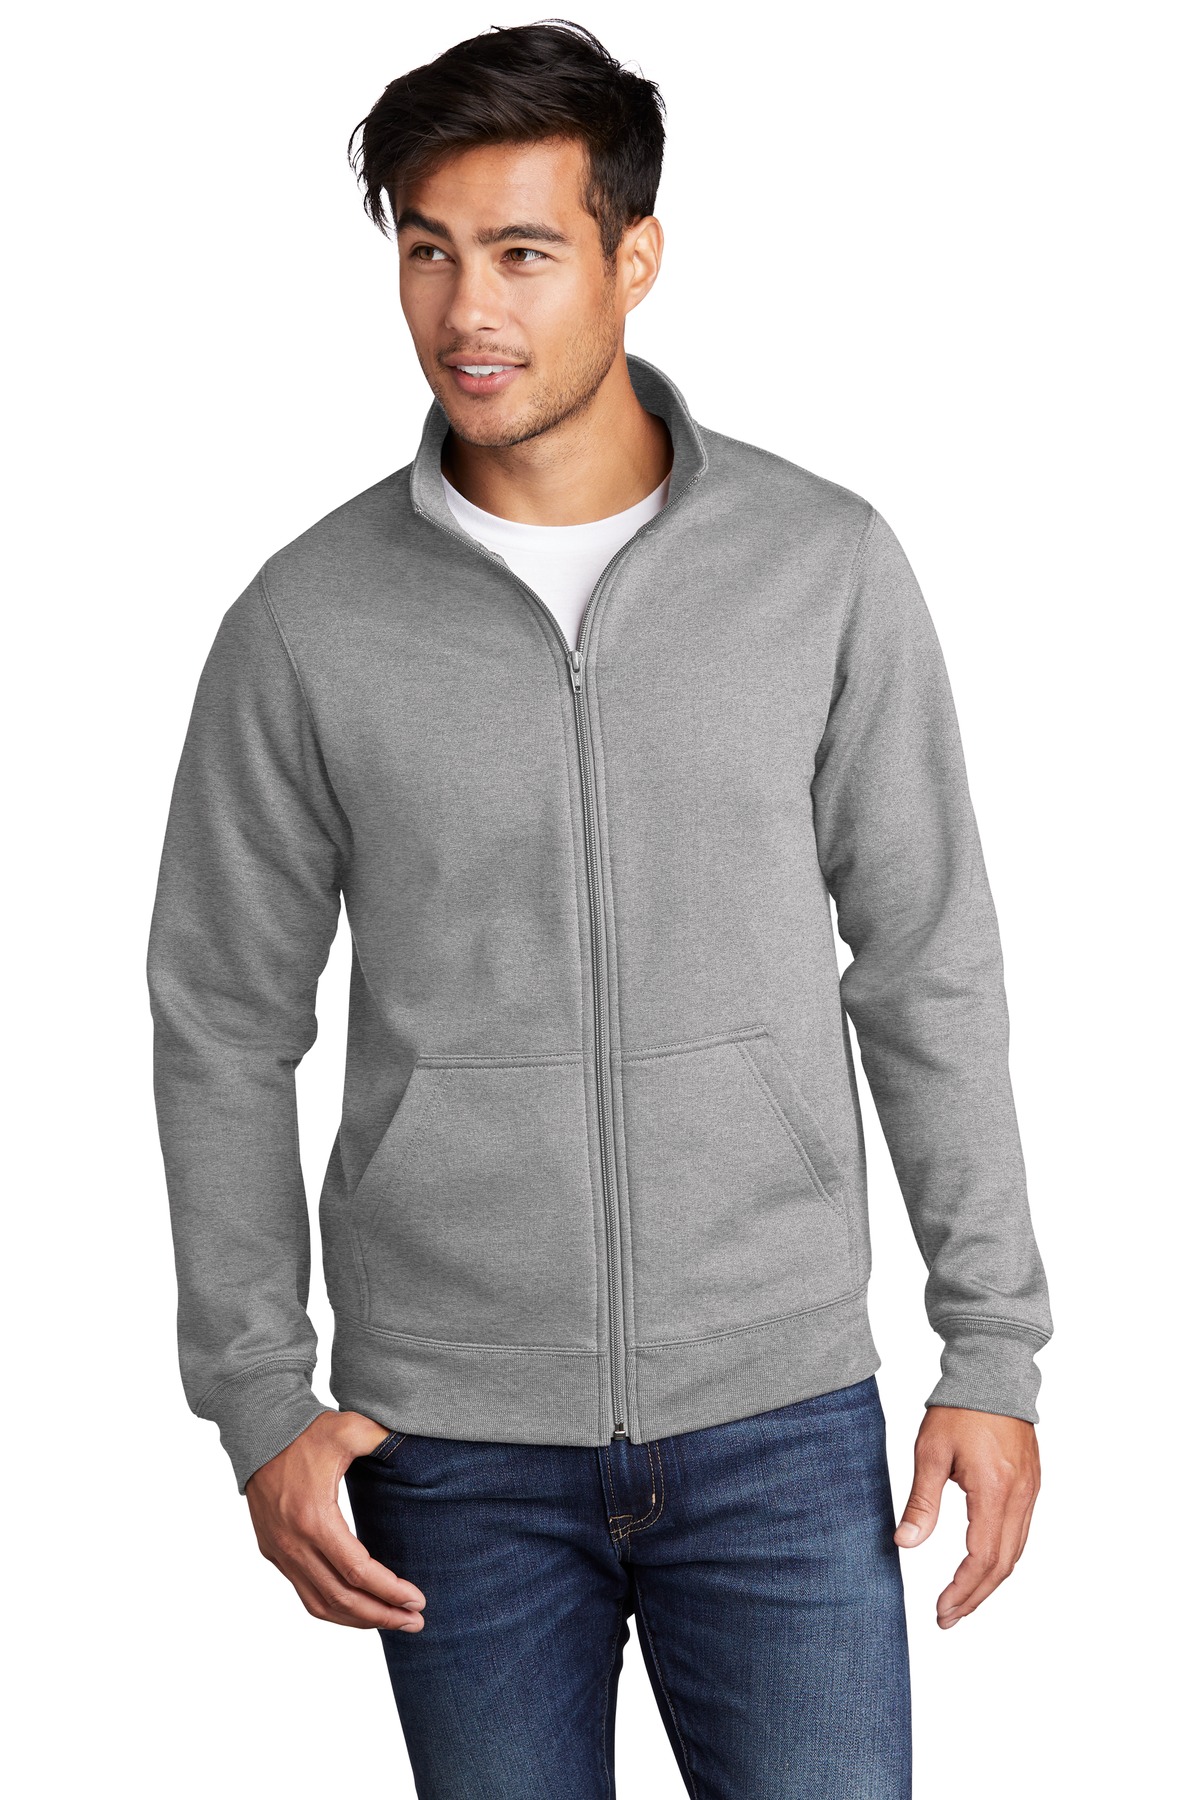 Port & Company Core Fleece Cadet Full-Zip Sweatshirt | eBay